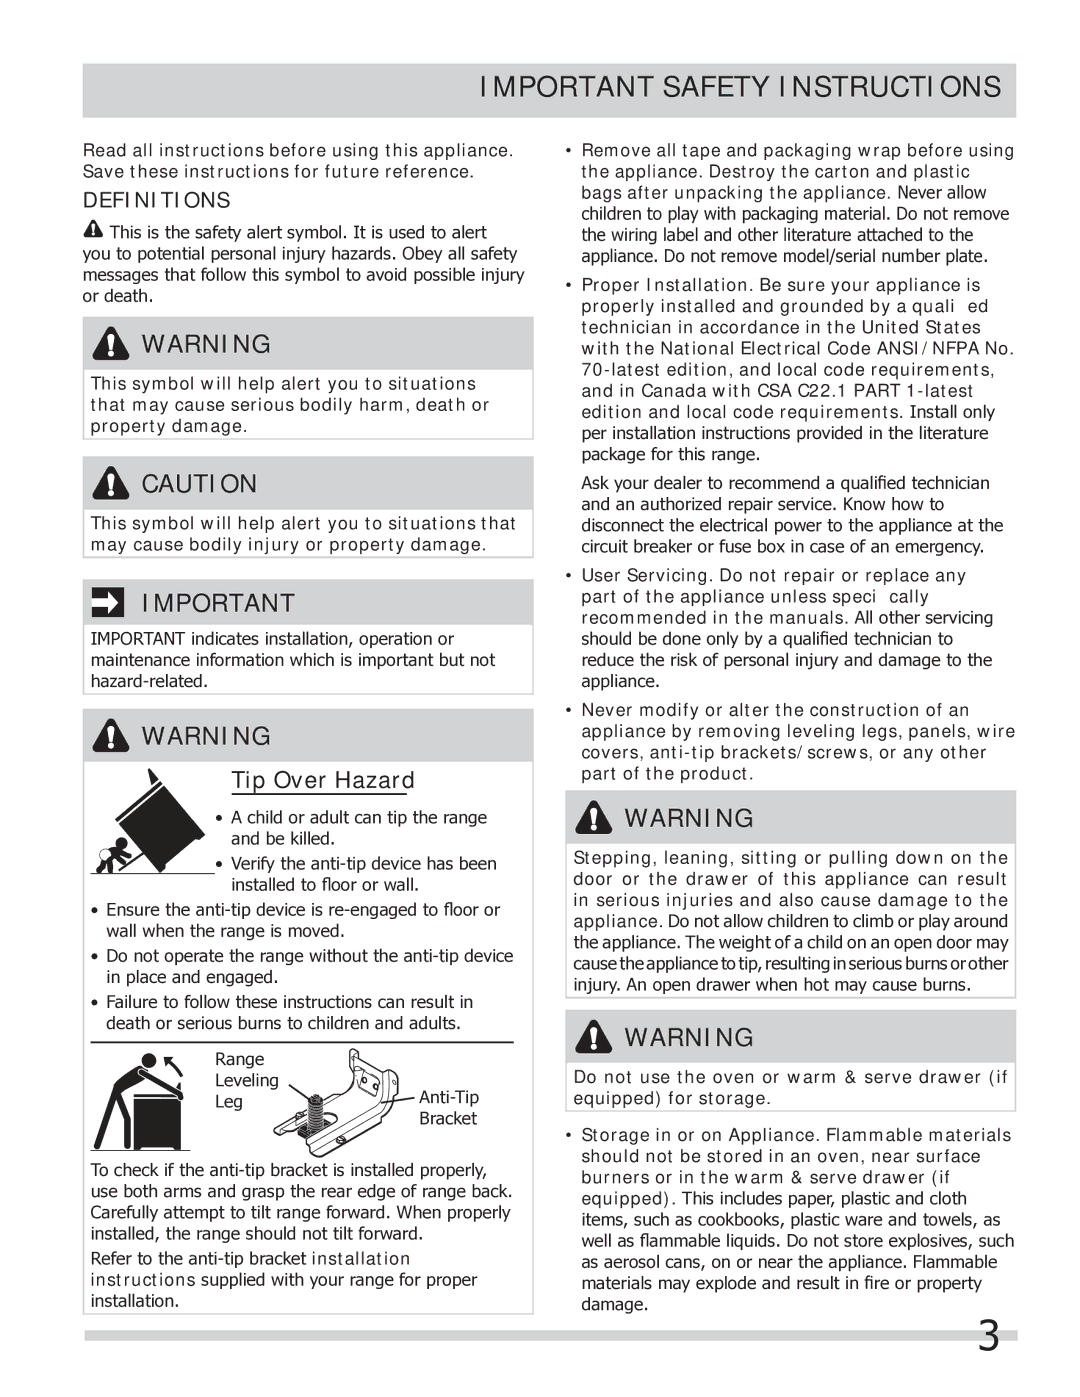 Frigidaire FGEF304DKW, FGEF304DKB, FGEF304DKF important safety instructions Important Safety Instructions, Definitions 